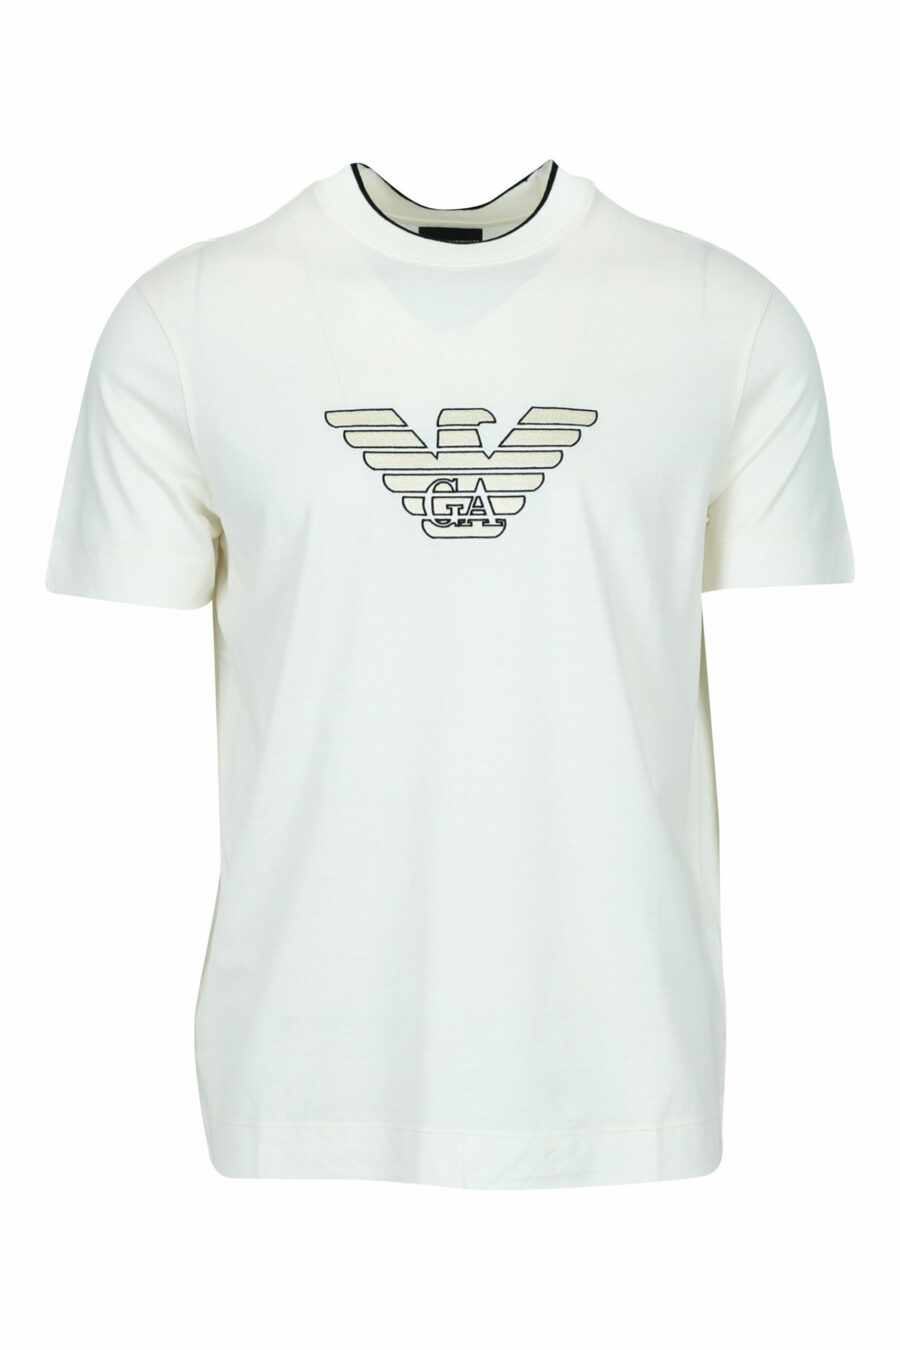 T-shirt crème avec maxilogo aigle centré - 8058947986996 scaled